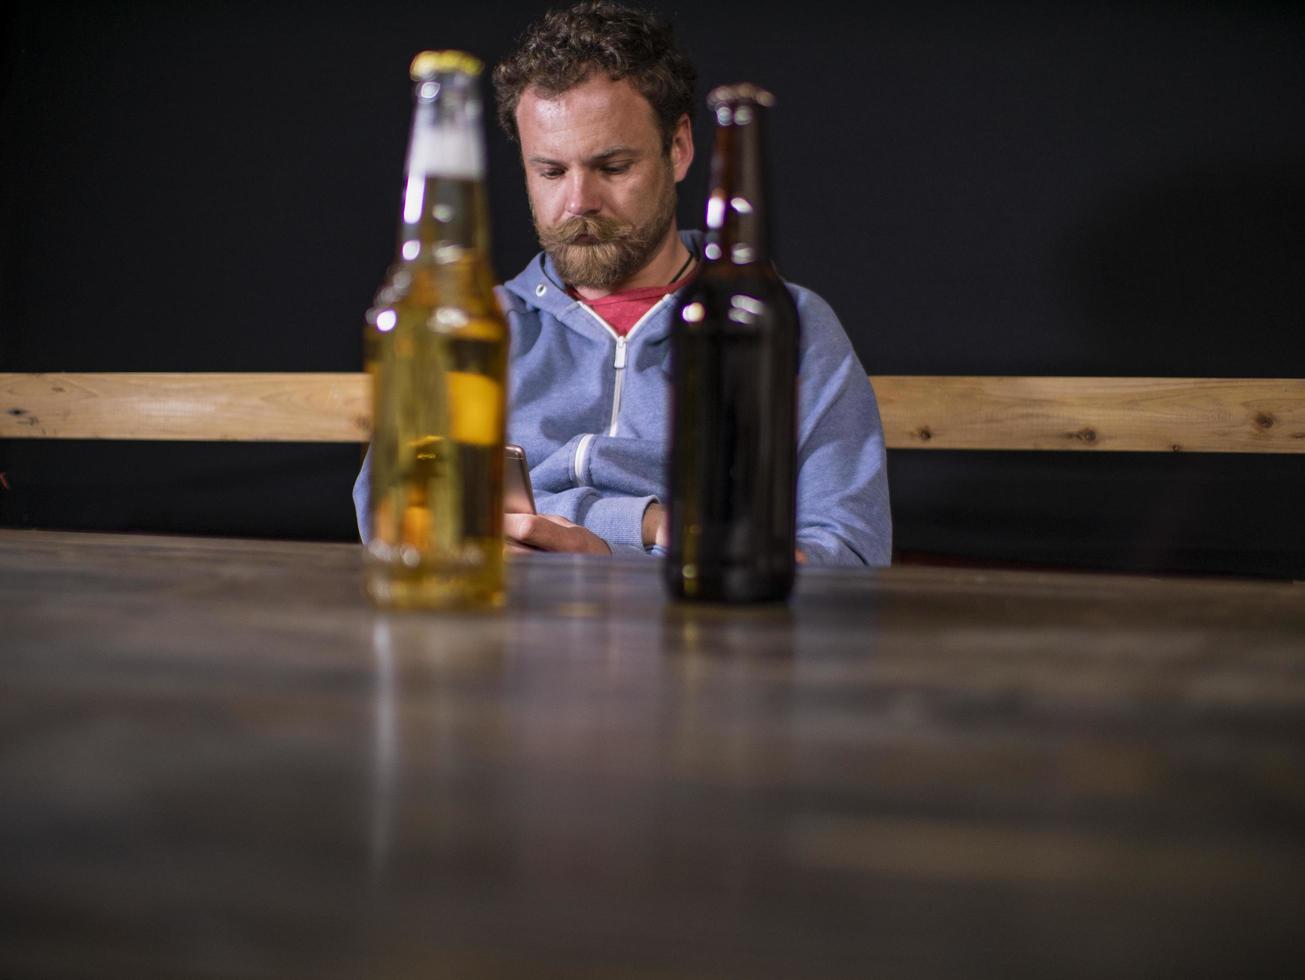 duas garrafas de cerveja estão em cima da mesa foto